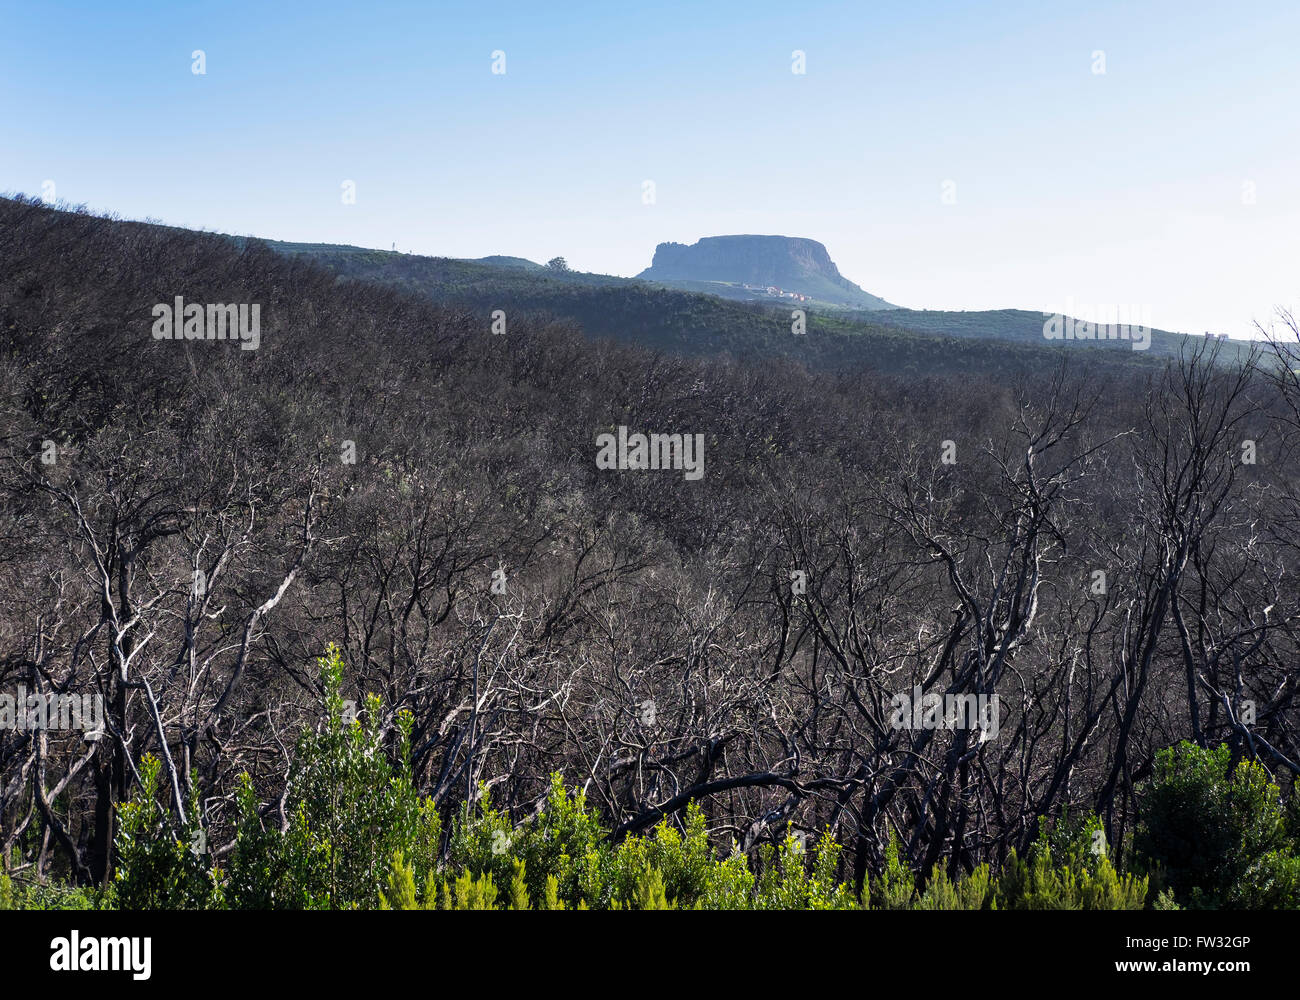 Forêt de lauriers brûlées, trois ans après un incendie de forêt, derrière la montagne, le Parc National de Garajonay, La Gomera Banque D'Images